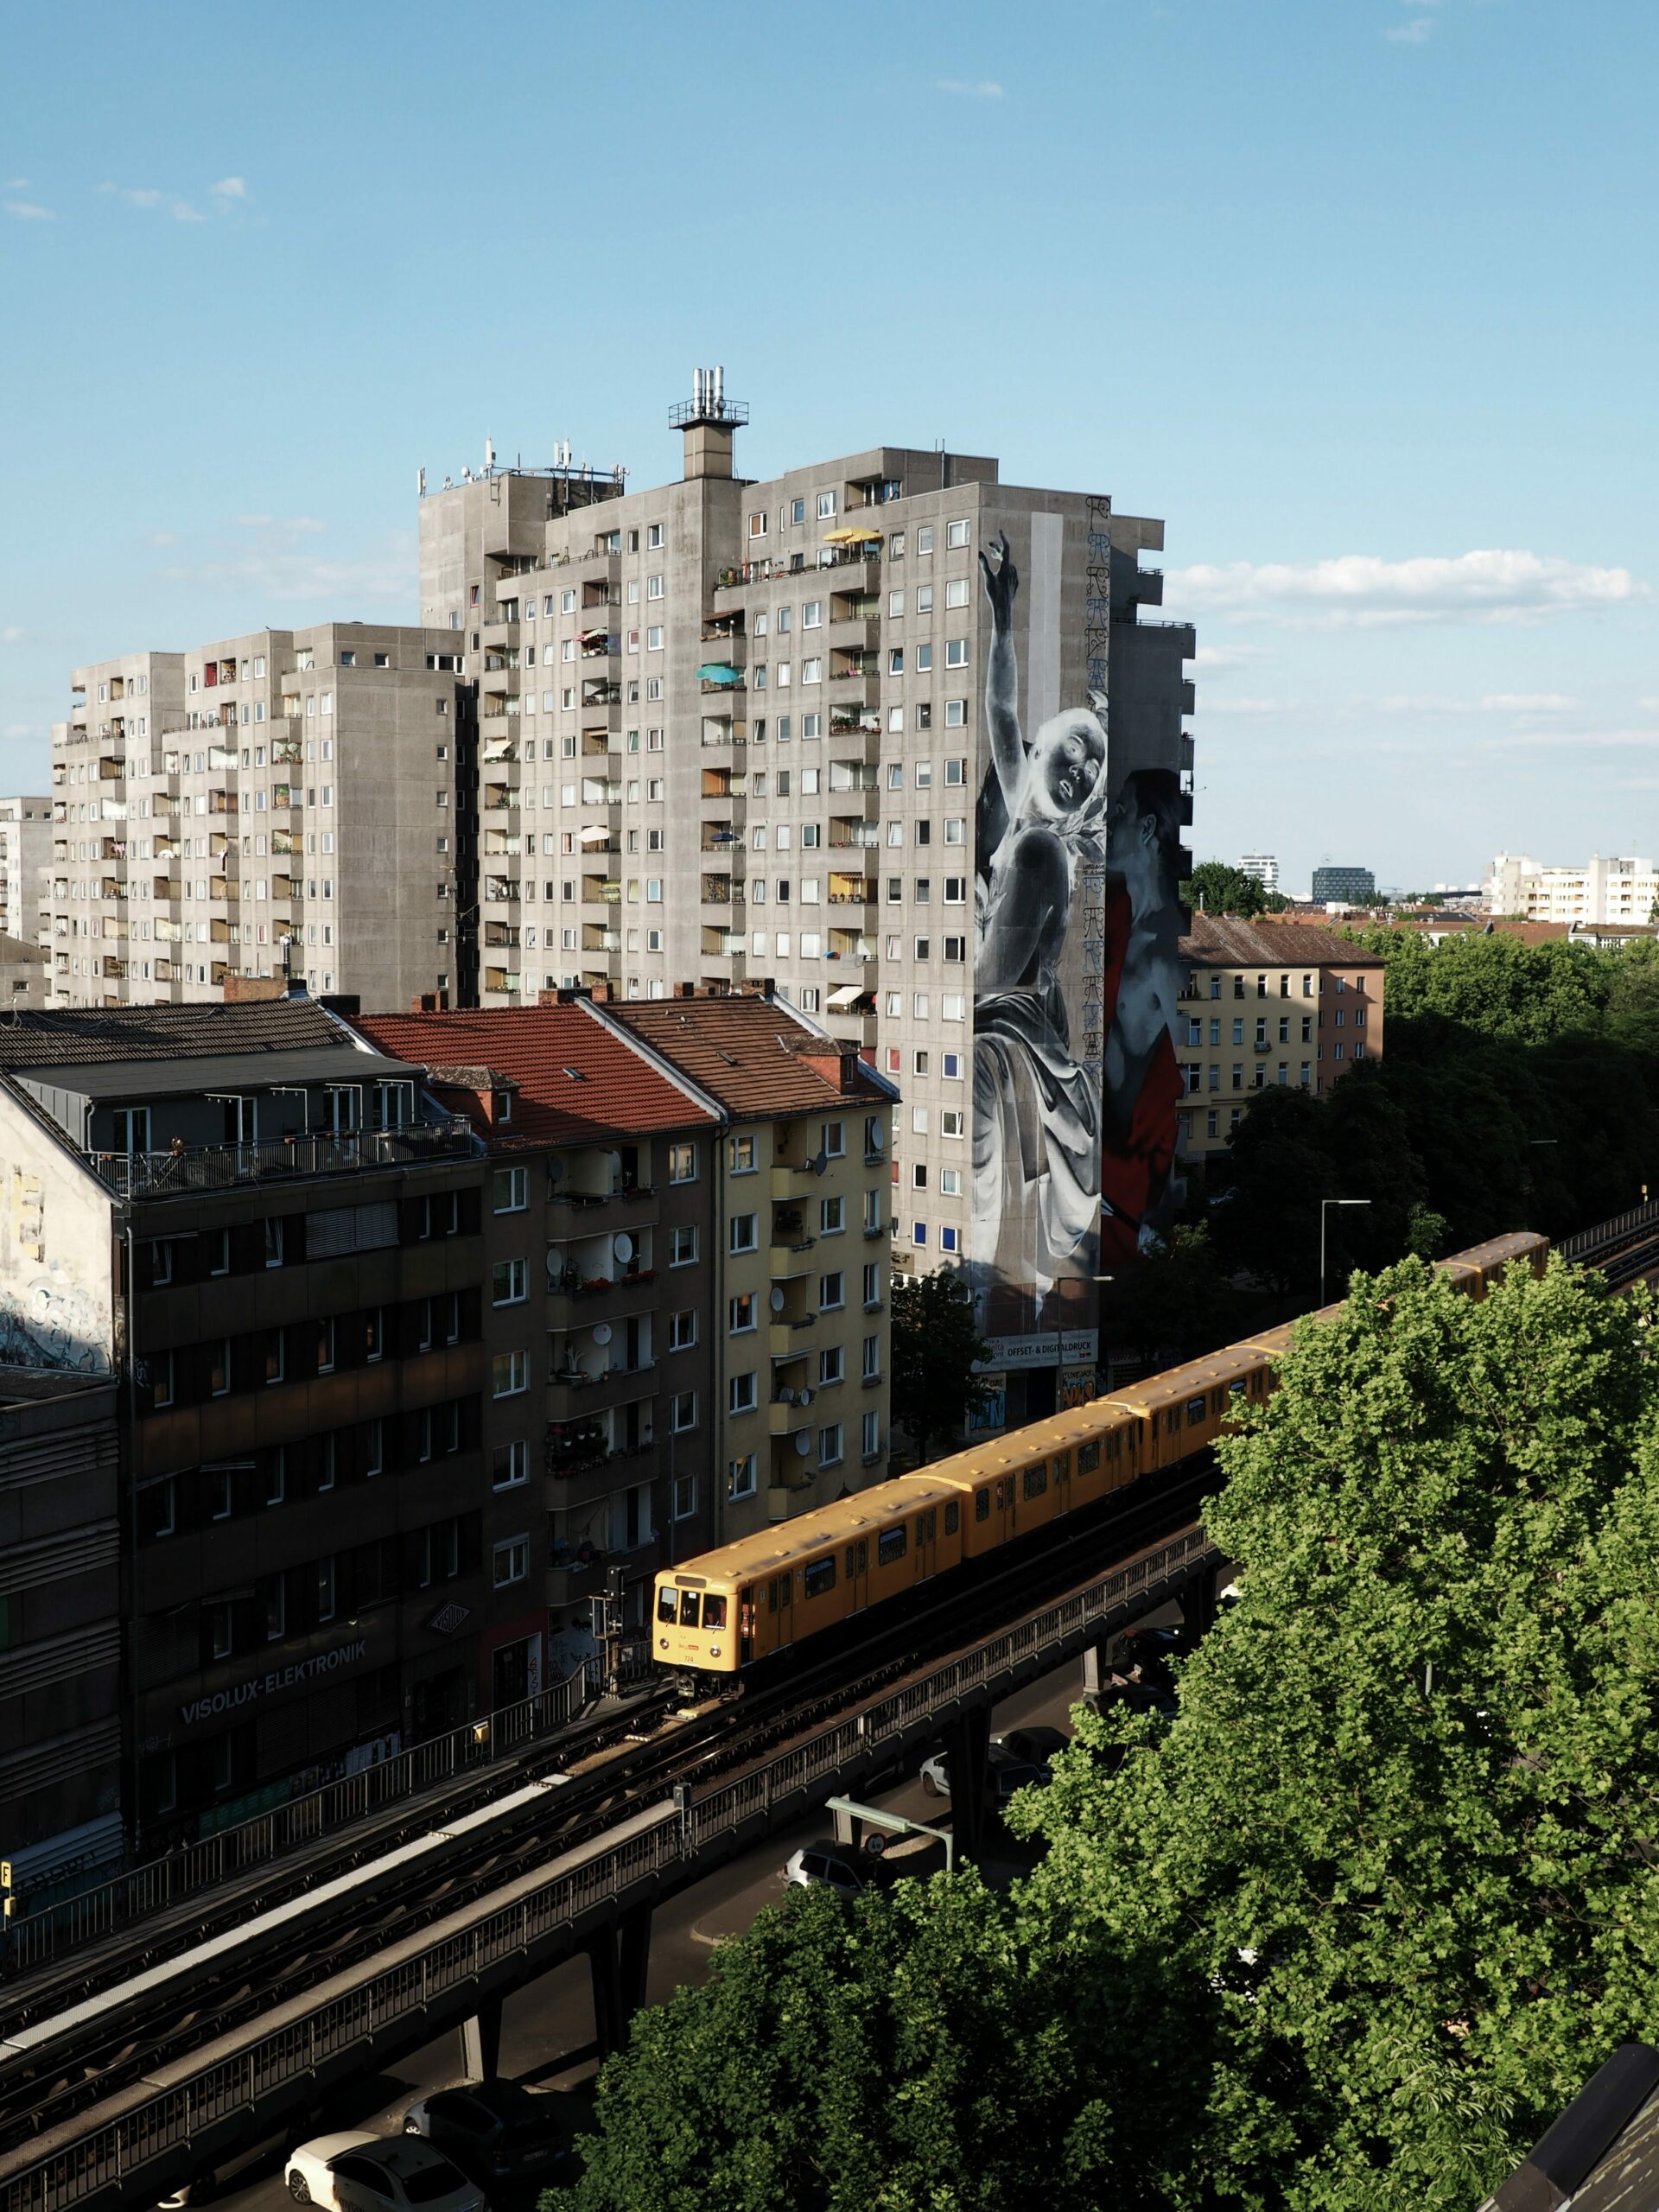 Ein Bild der Berliner U-Bahn auf einer überirdisch verlaufenden Linie (U2), dahinter ein Plattenbau mit einem Mural, dass eine invertierte Frau zeigt. 